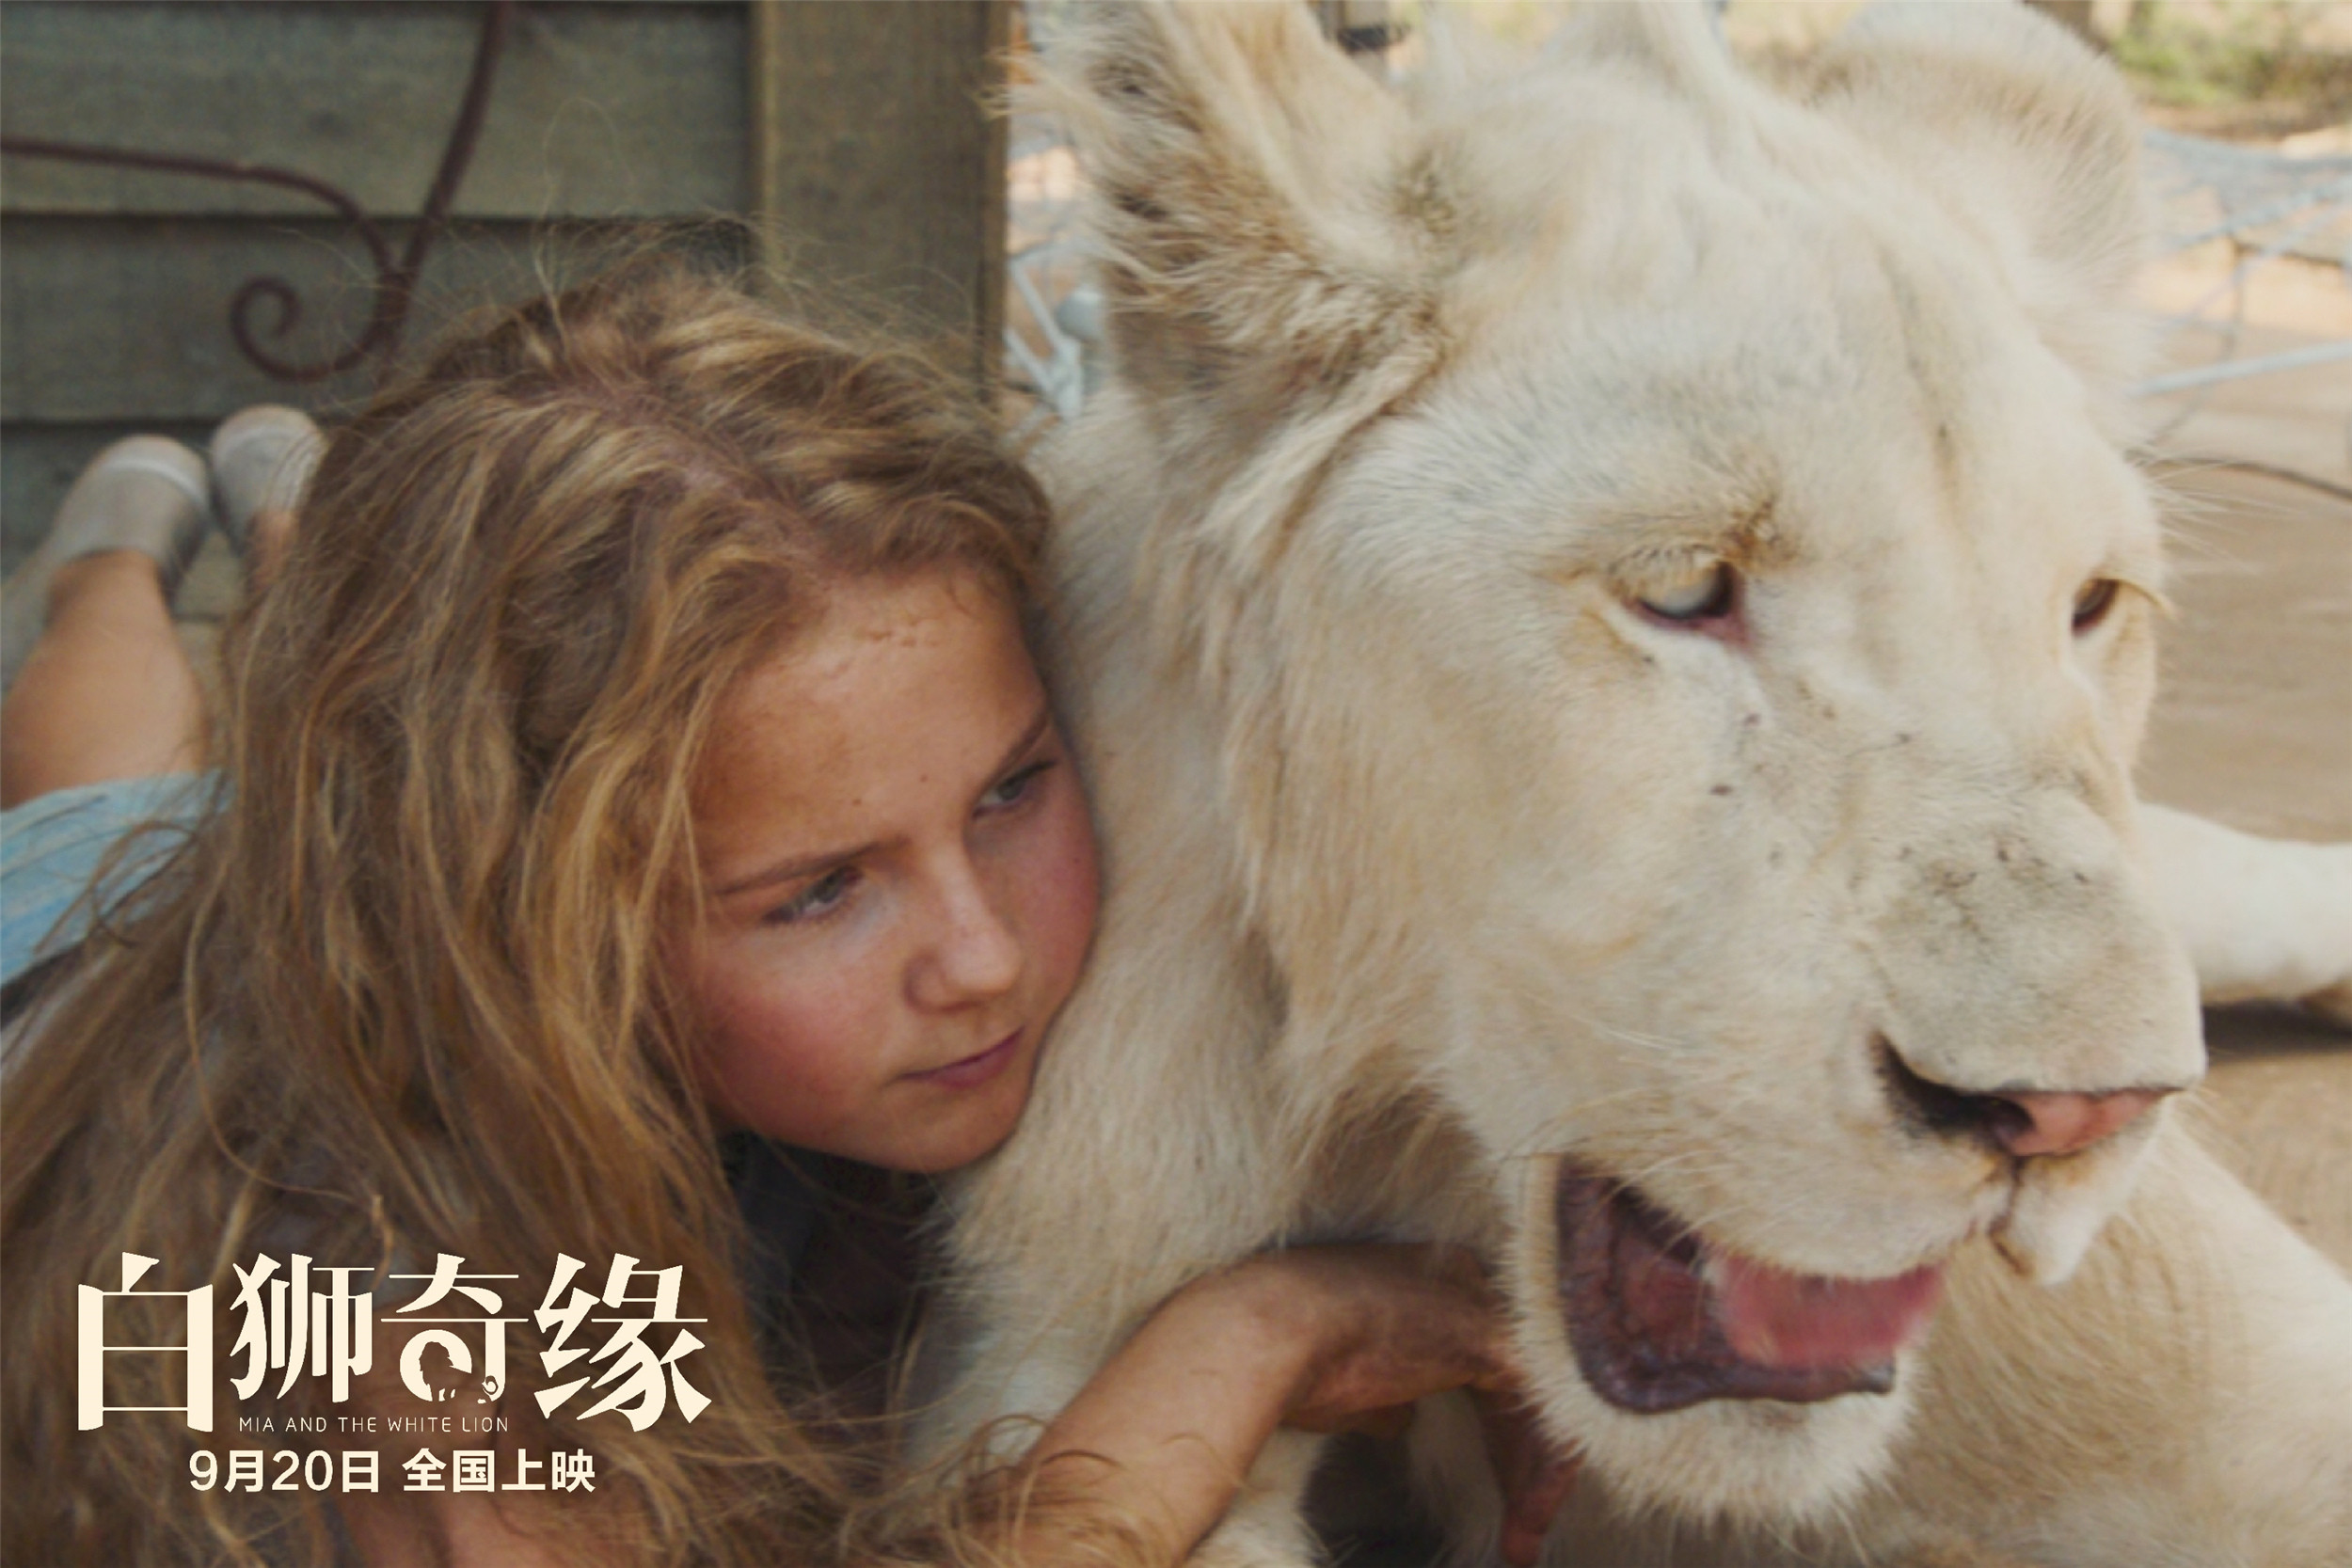 《白狮奇缘》见证了一段人与动物的真挚友谊